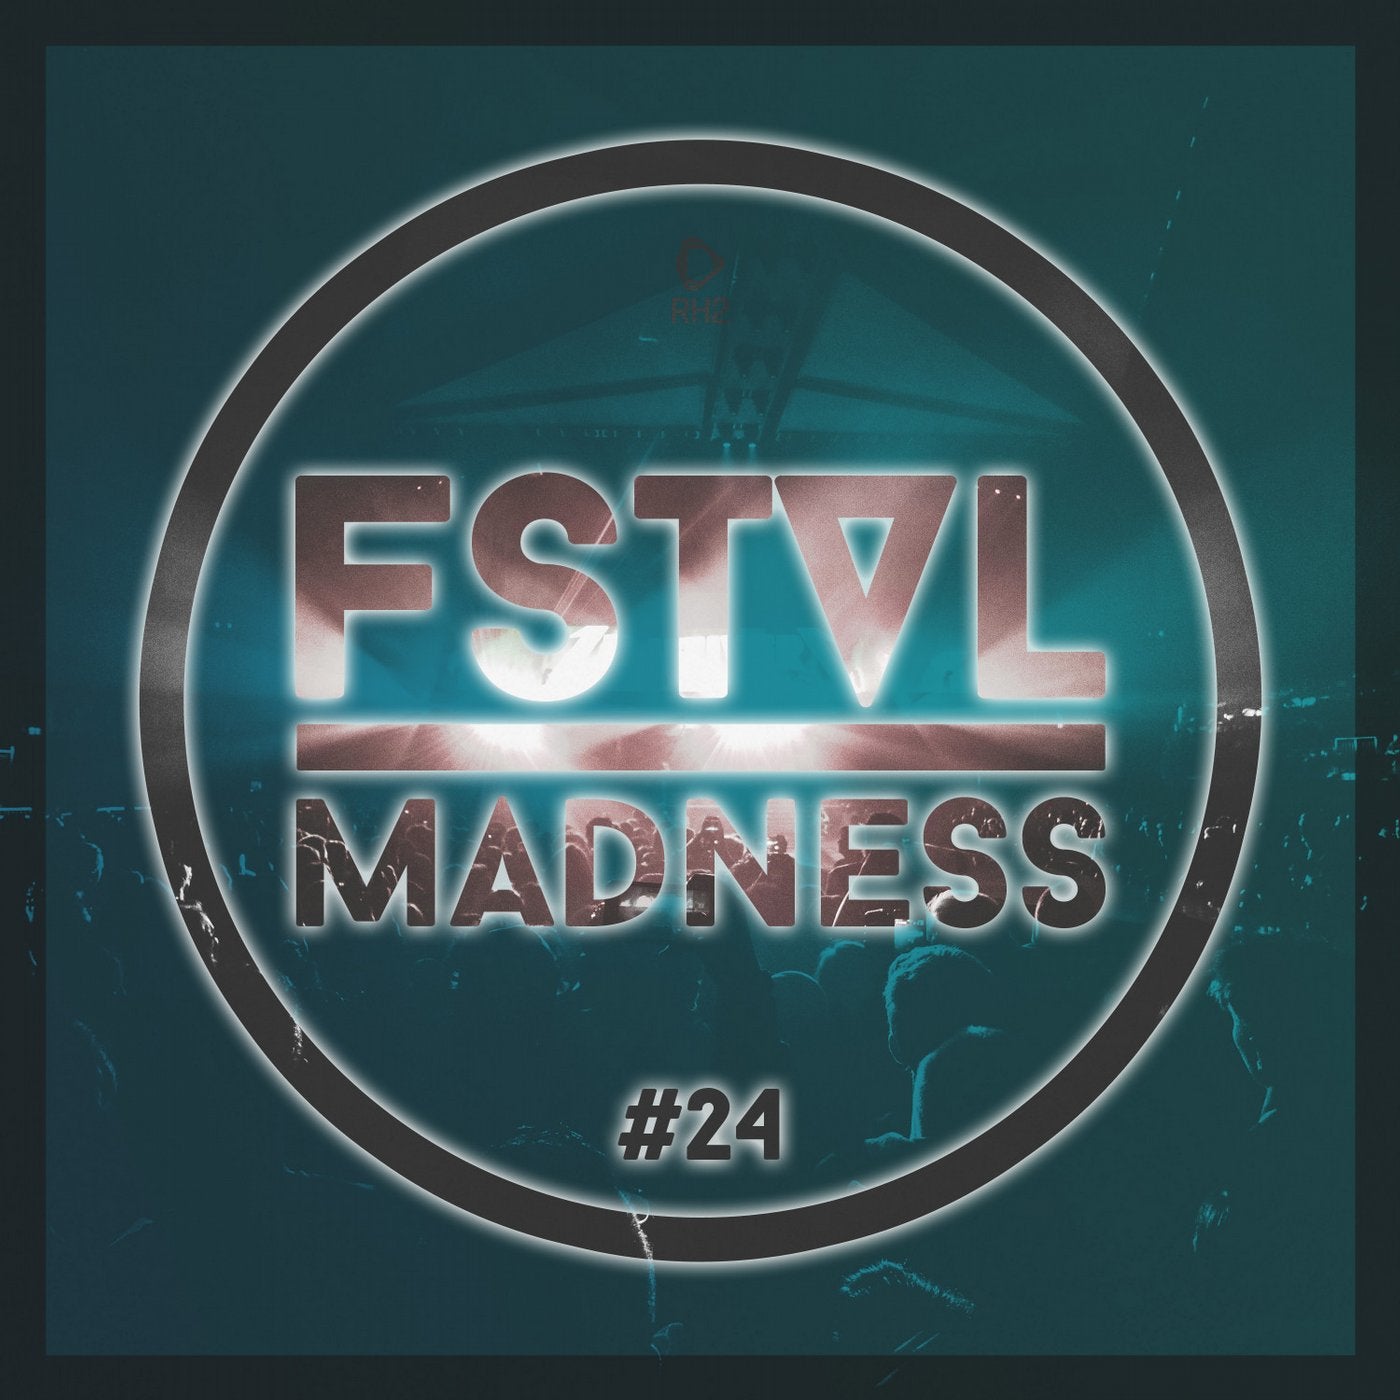 FSTVL Madness - Pure Festival Sounds Vol. 24